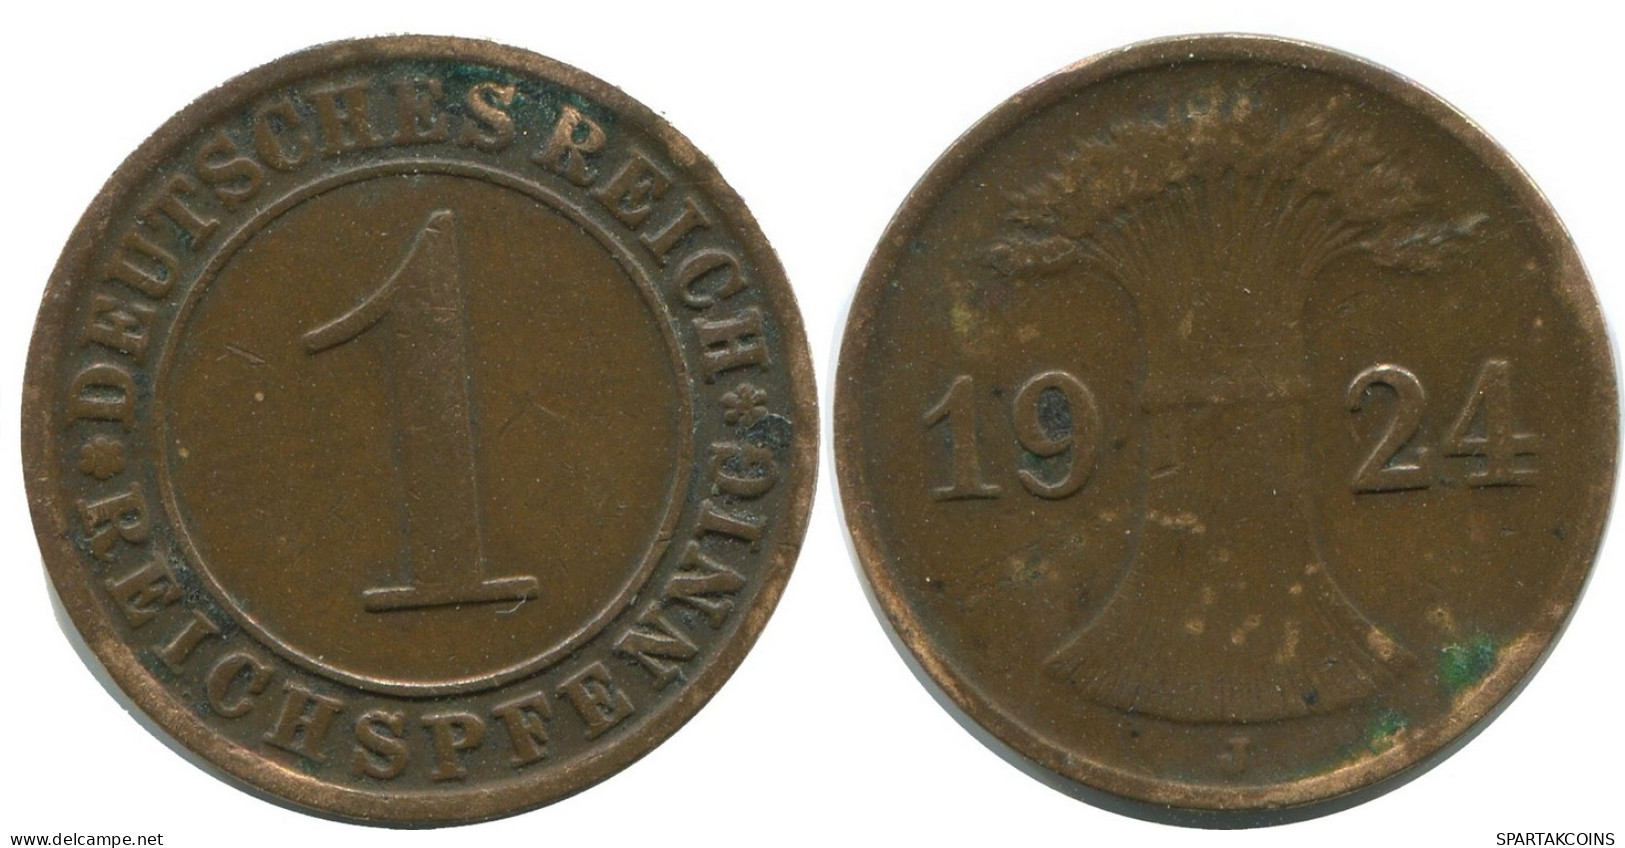 1 REICHSPFENNIG 1924 J GERMANY Coin #AD460.9.U - 1 Rentenpfennig & 1 Reichspfennig